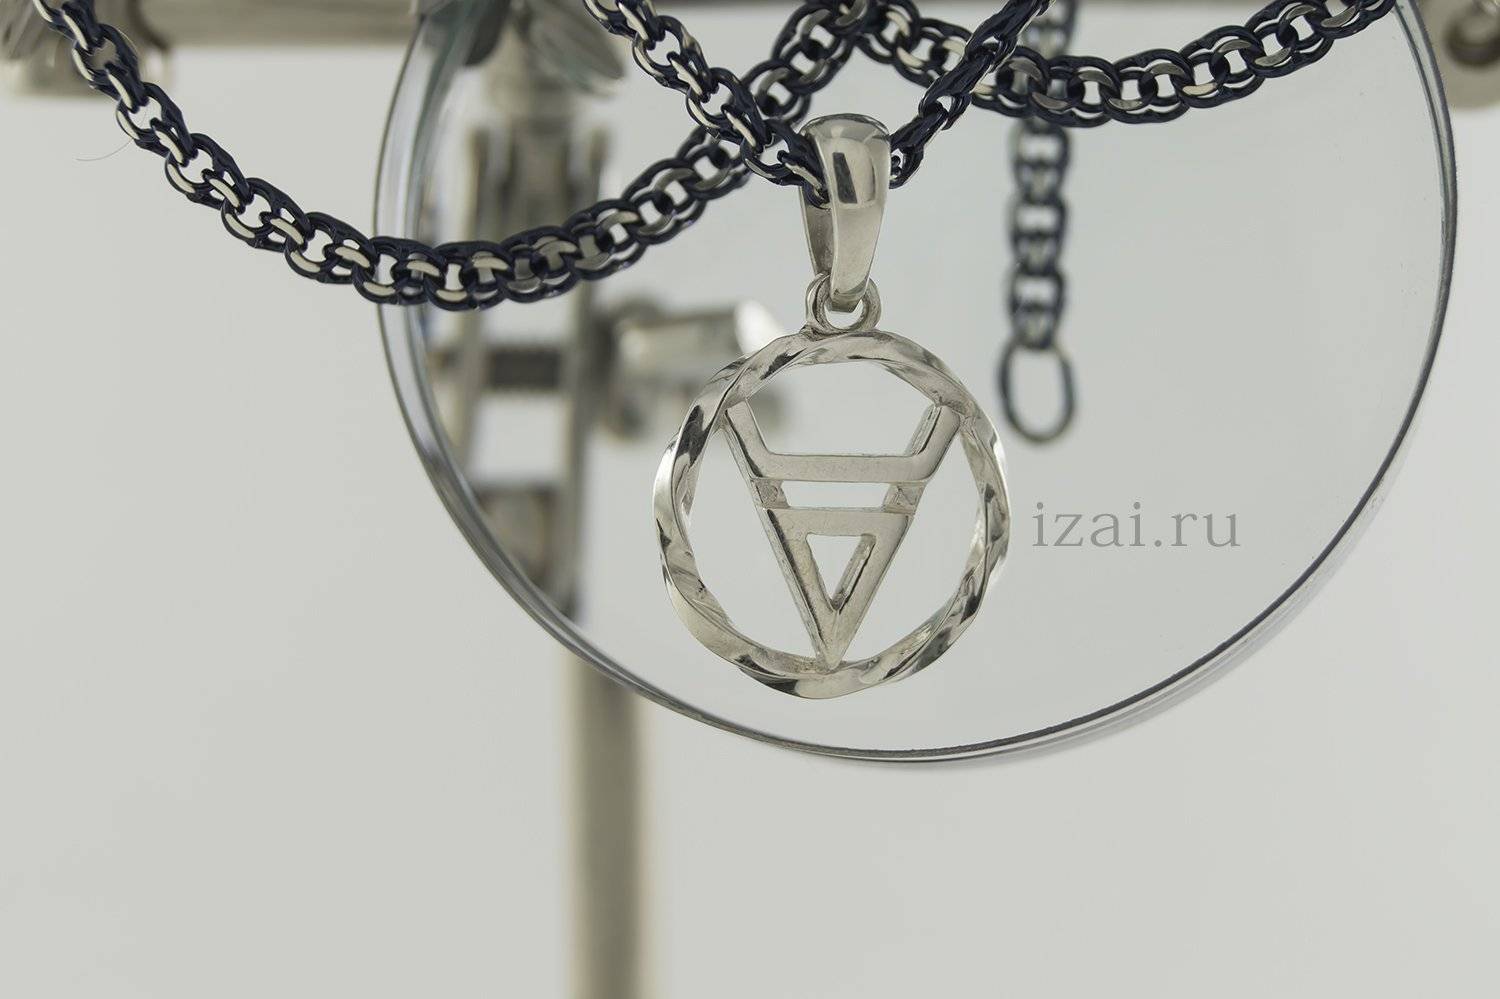 Символ велеса. izai.ru из серебра или золота